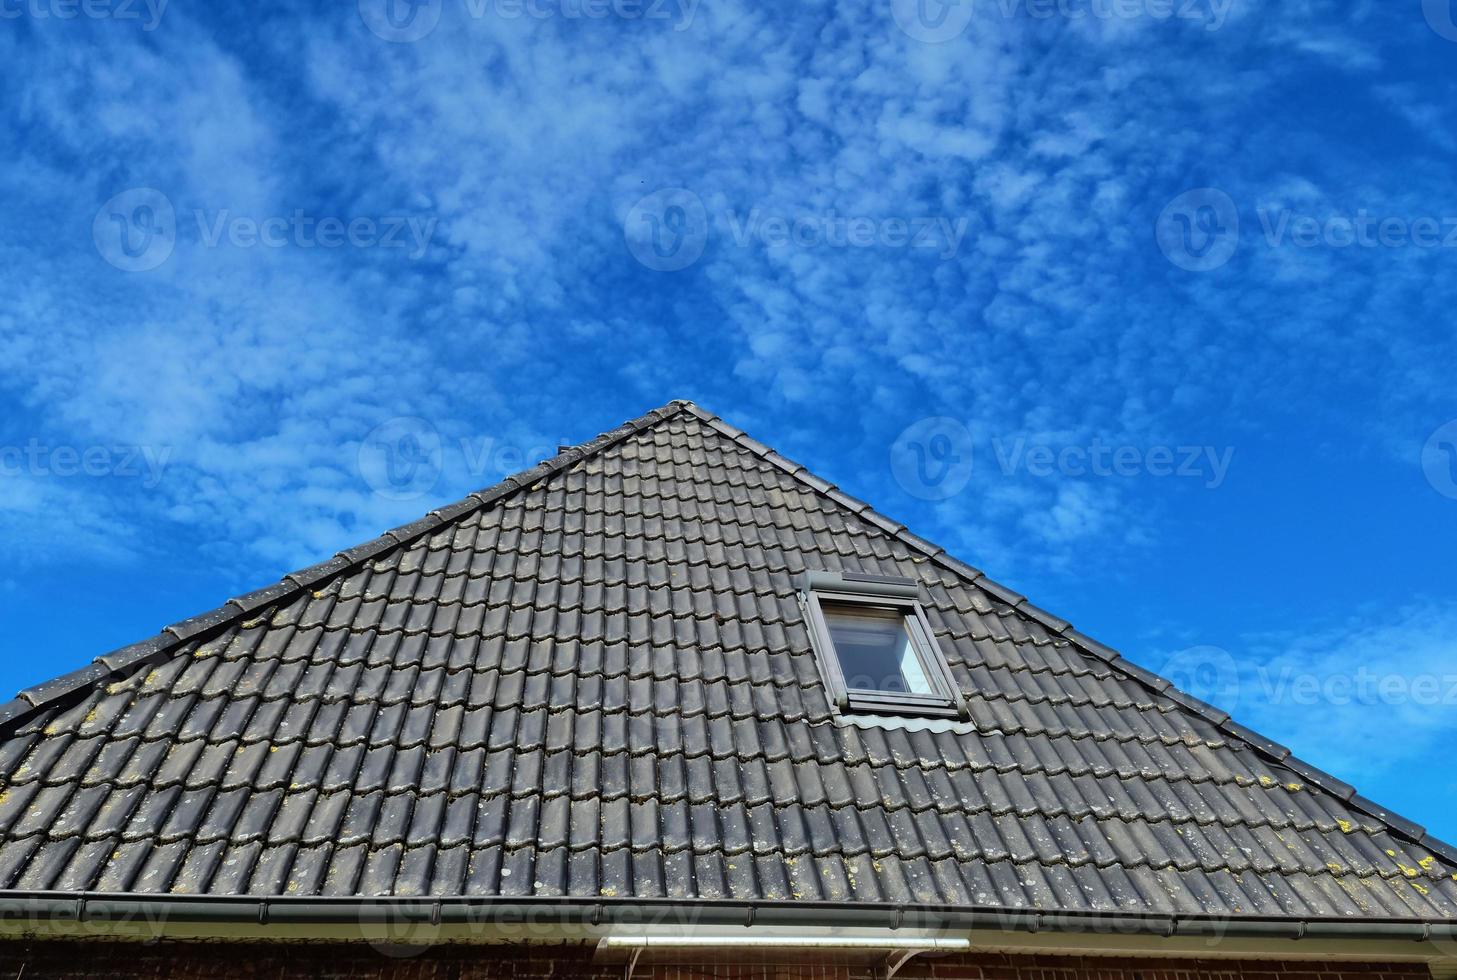 offenes dachfenster im velux-stil mit schwarzen dachziegeln. foto